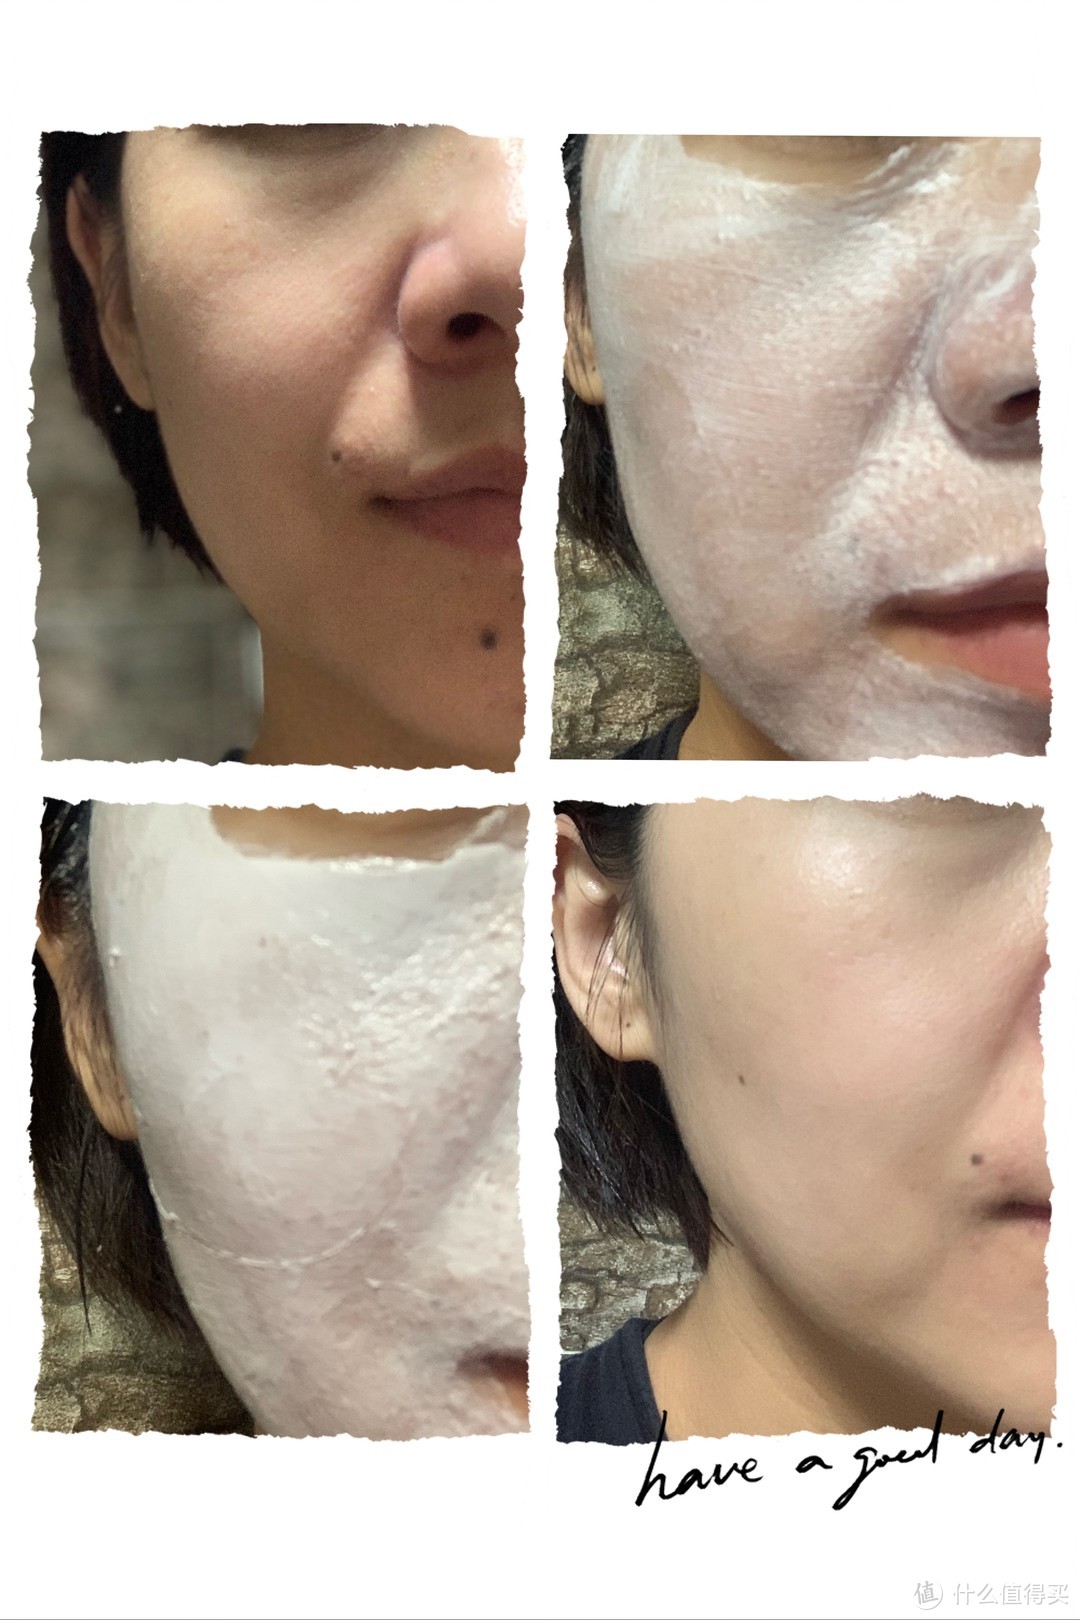 分别为洗脸后无护肤（左上）、第一遍薄涂（右上）、第二遍厚涂（左下）、30分钟后清洗掉面膜无护肤（右下）。